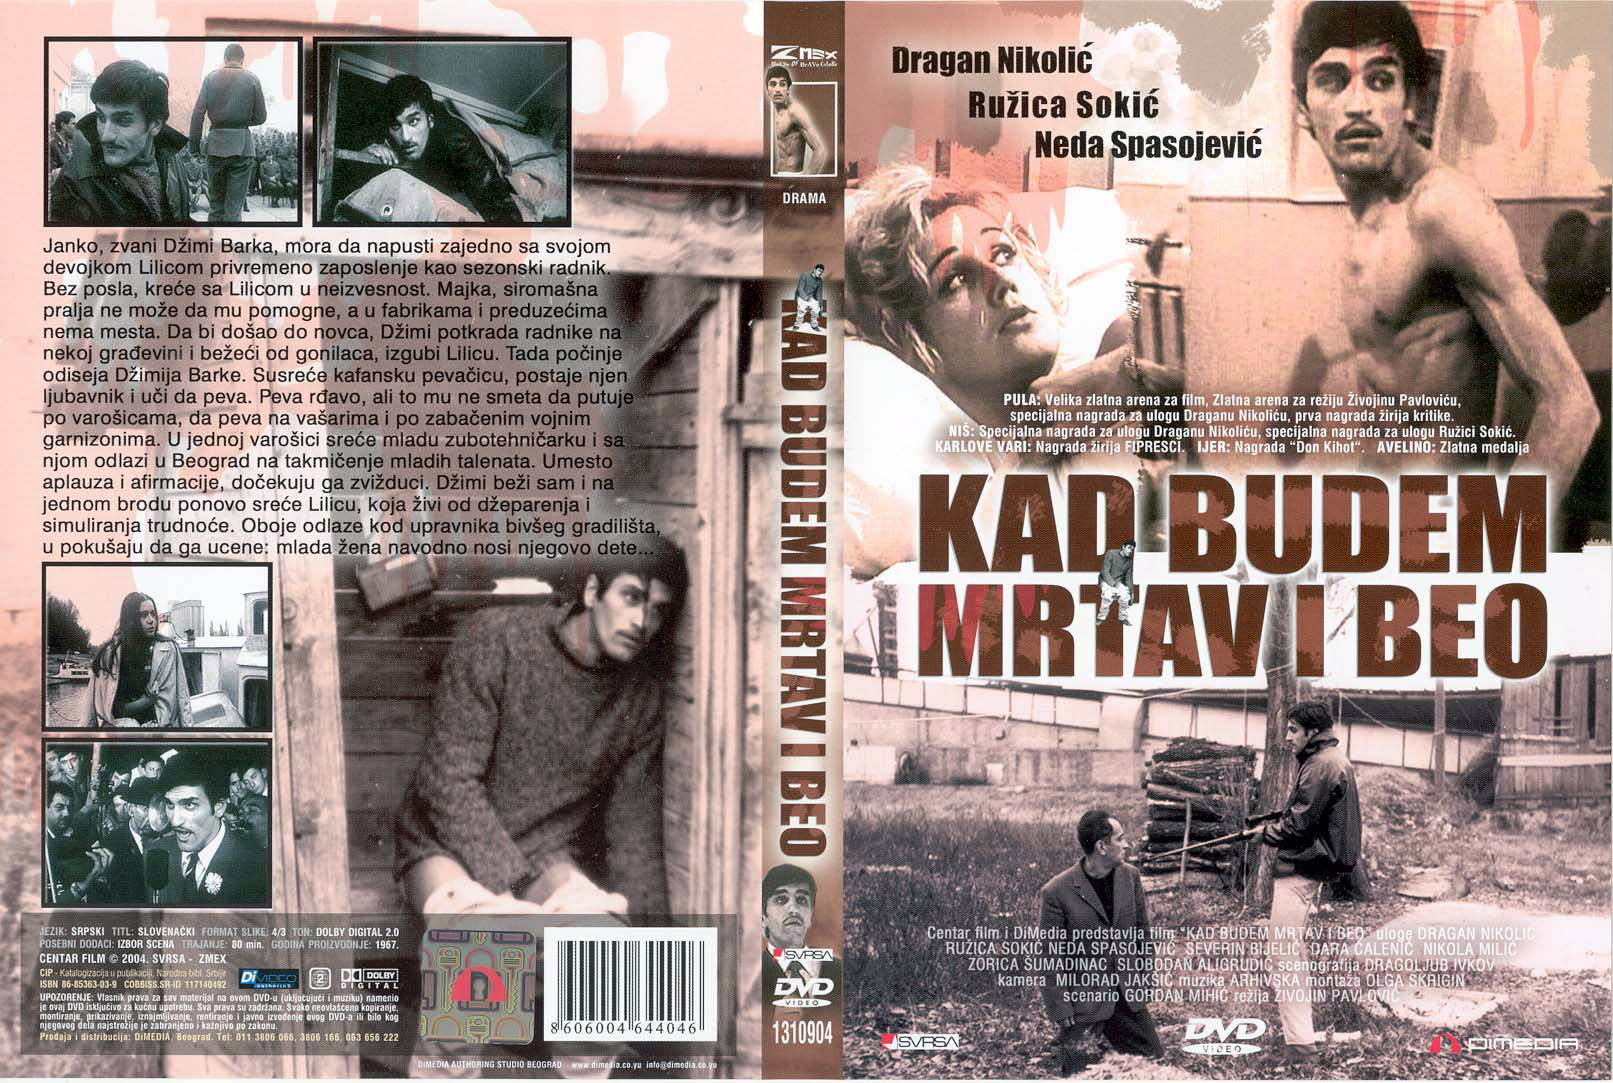 Click to view full size image -  DVD Cover - K - Kad_budem_mrtav_i_beo_-_prednja_zadnja - Kad_budem_mrtav_i_beo_-_prednja_zadnja.jpg